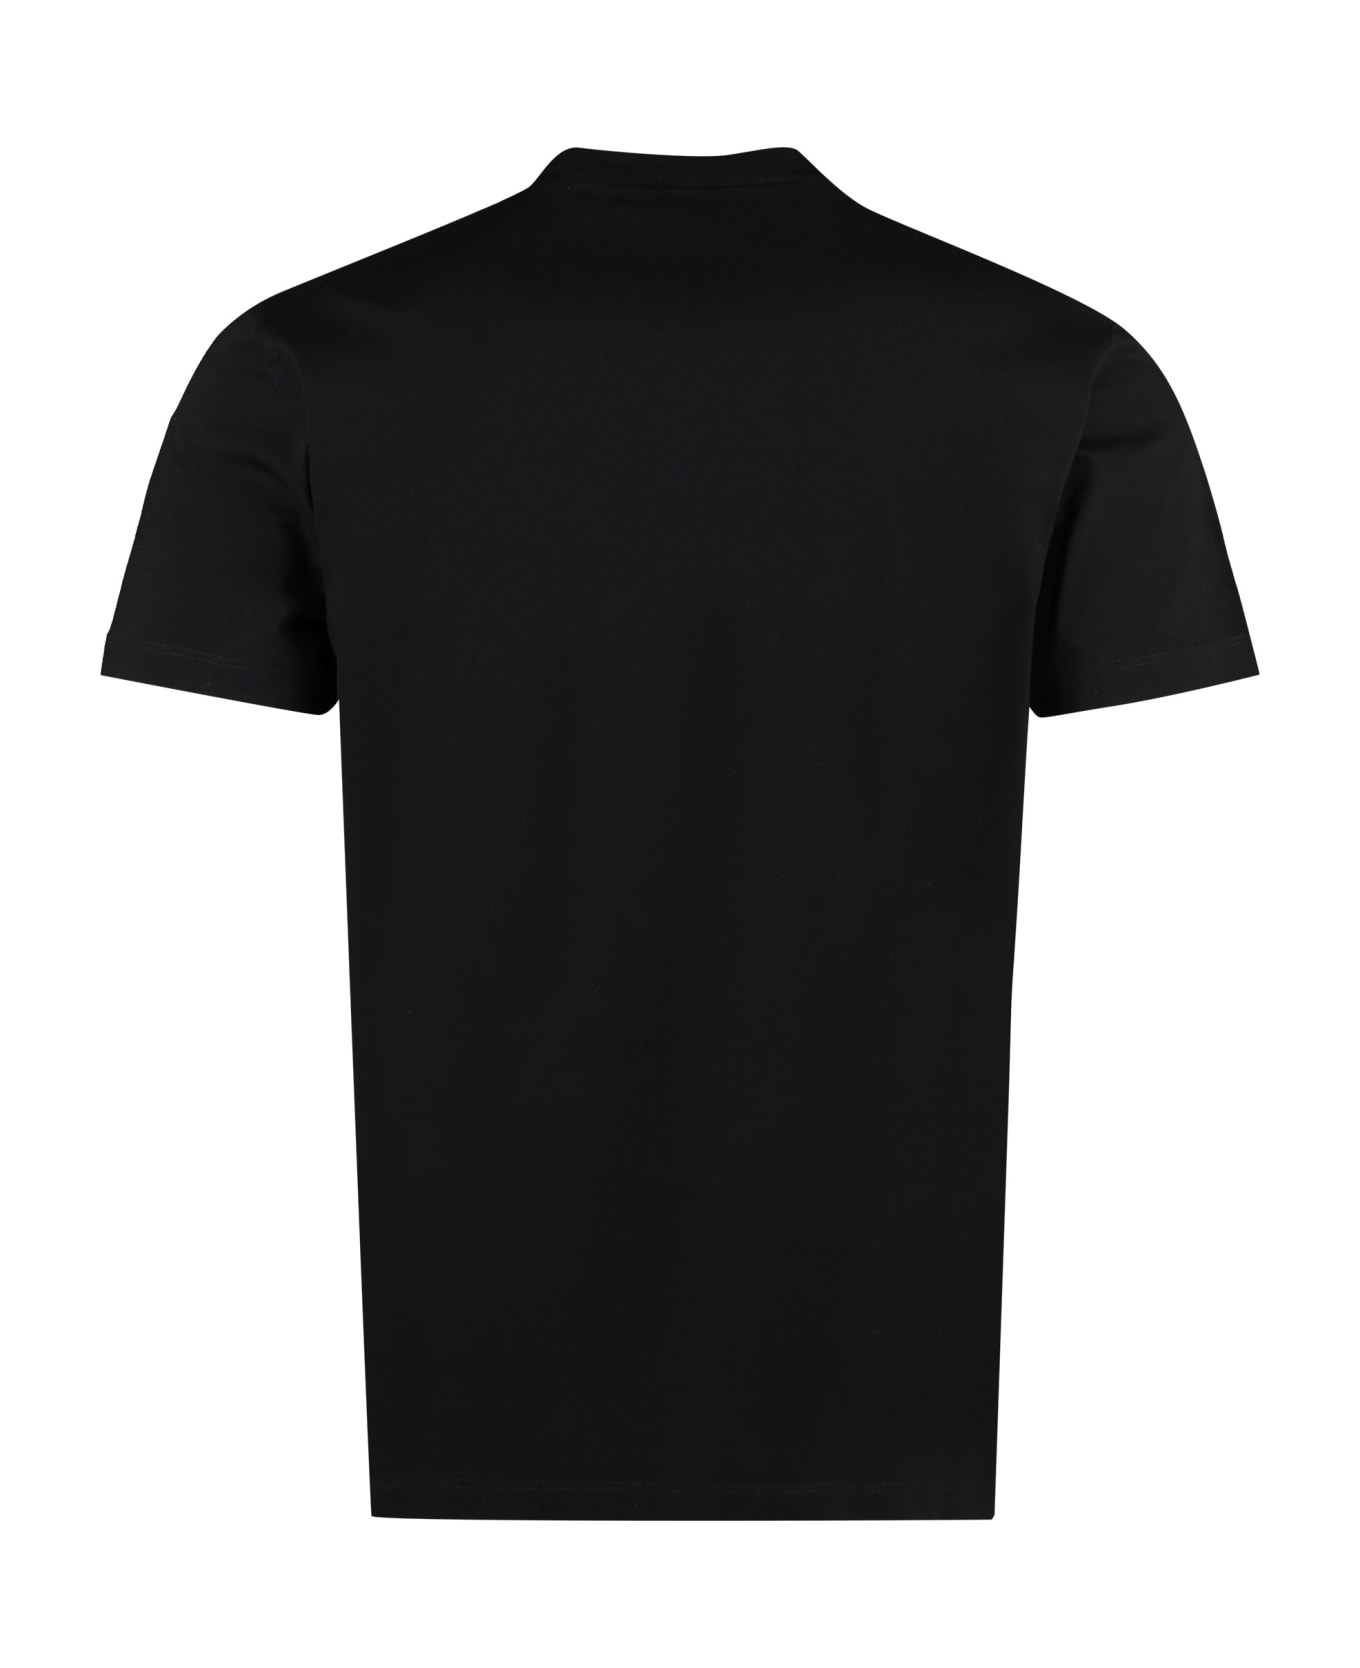 Dsquared2 Cotton Crew-neck T-shirt - 980